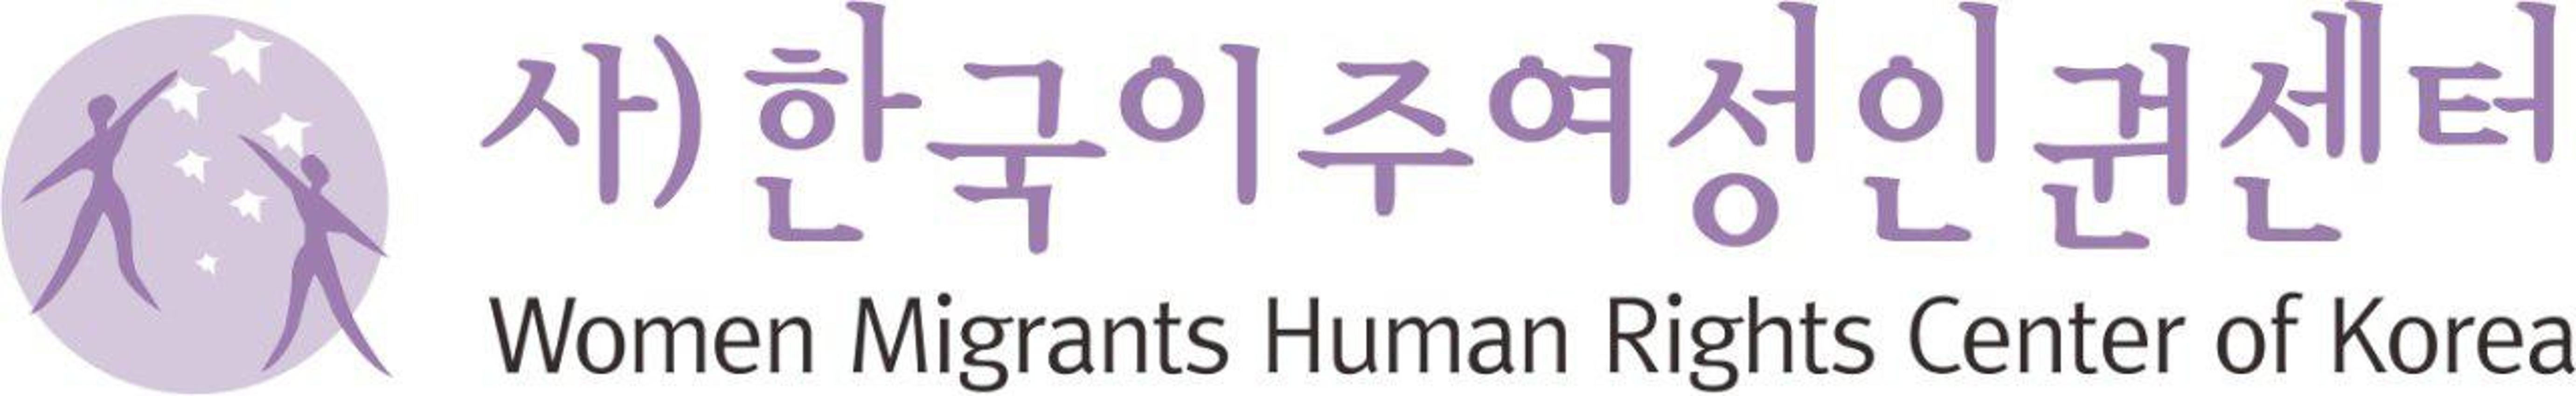 사단법인 한국이주여성인권센터 로고